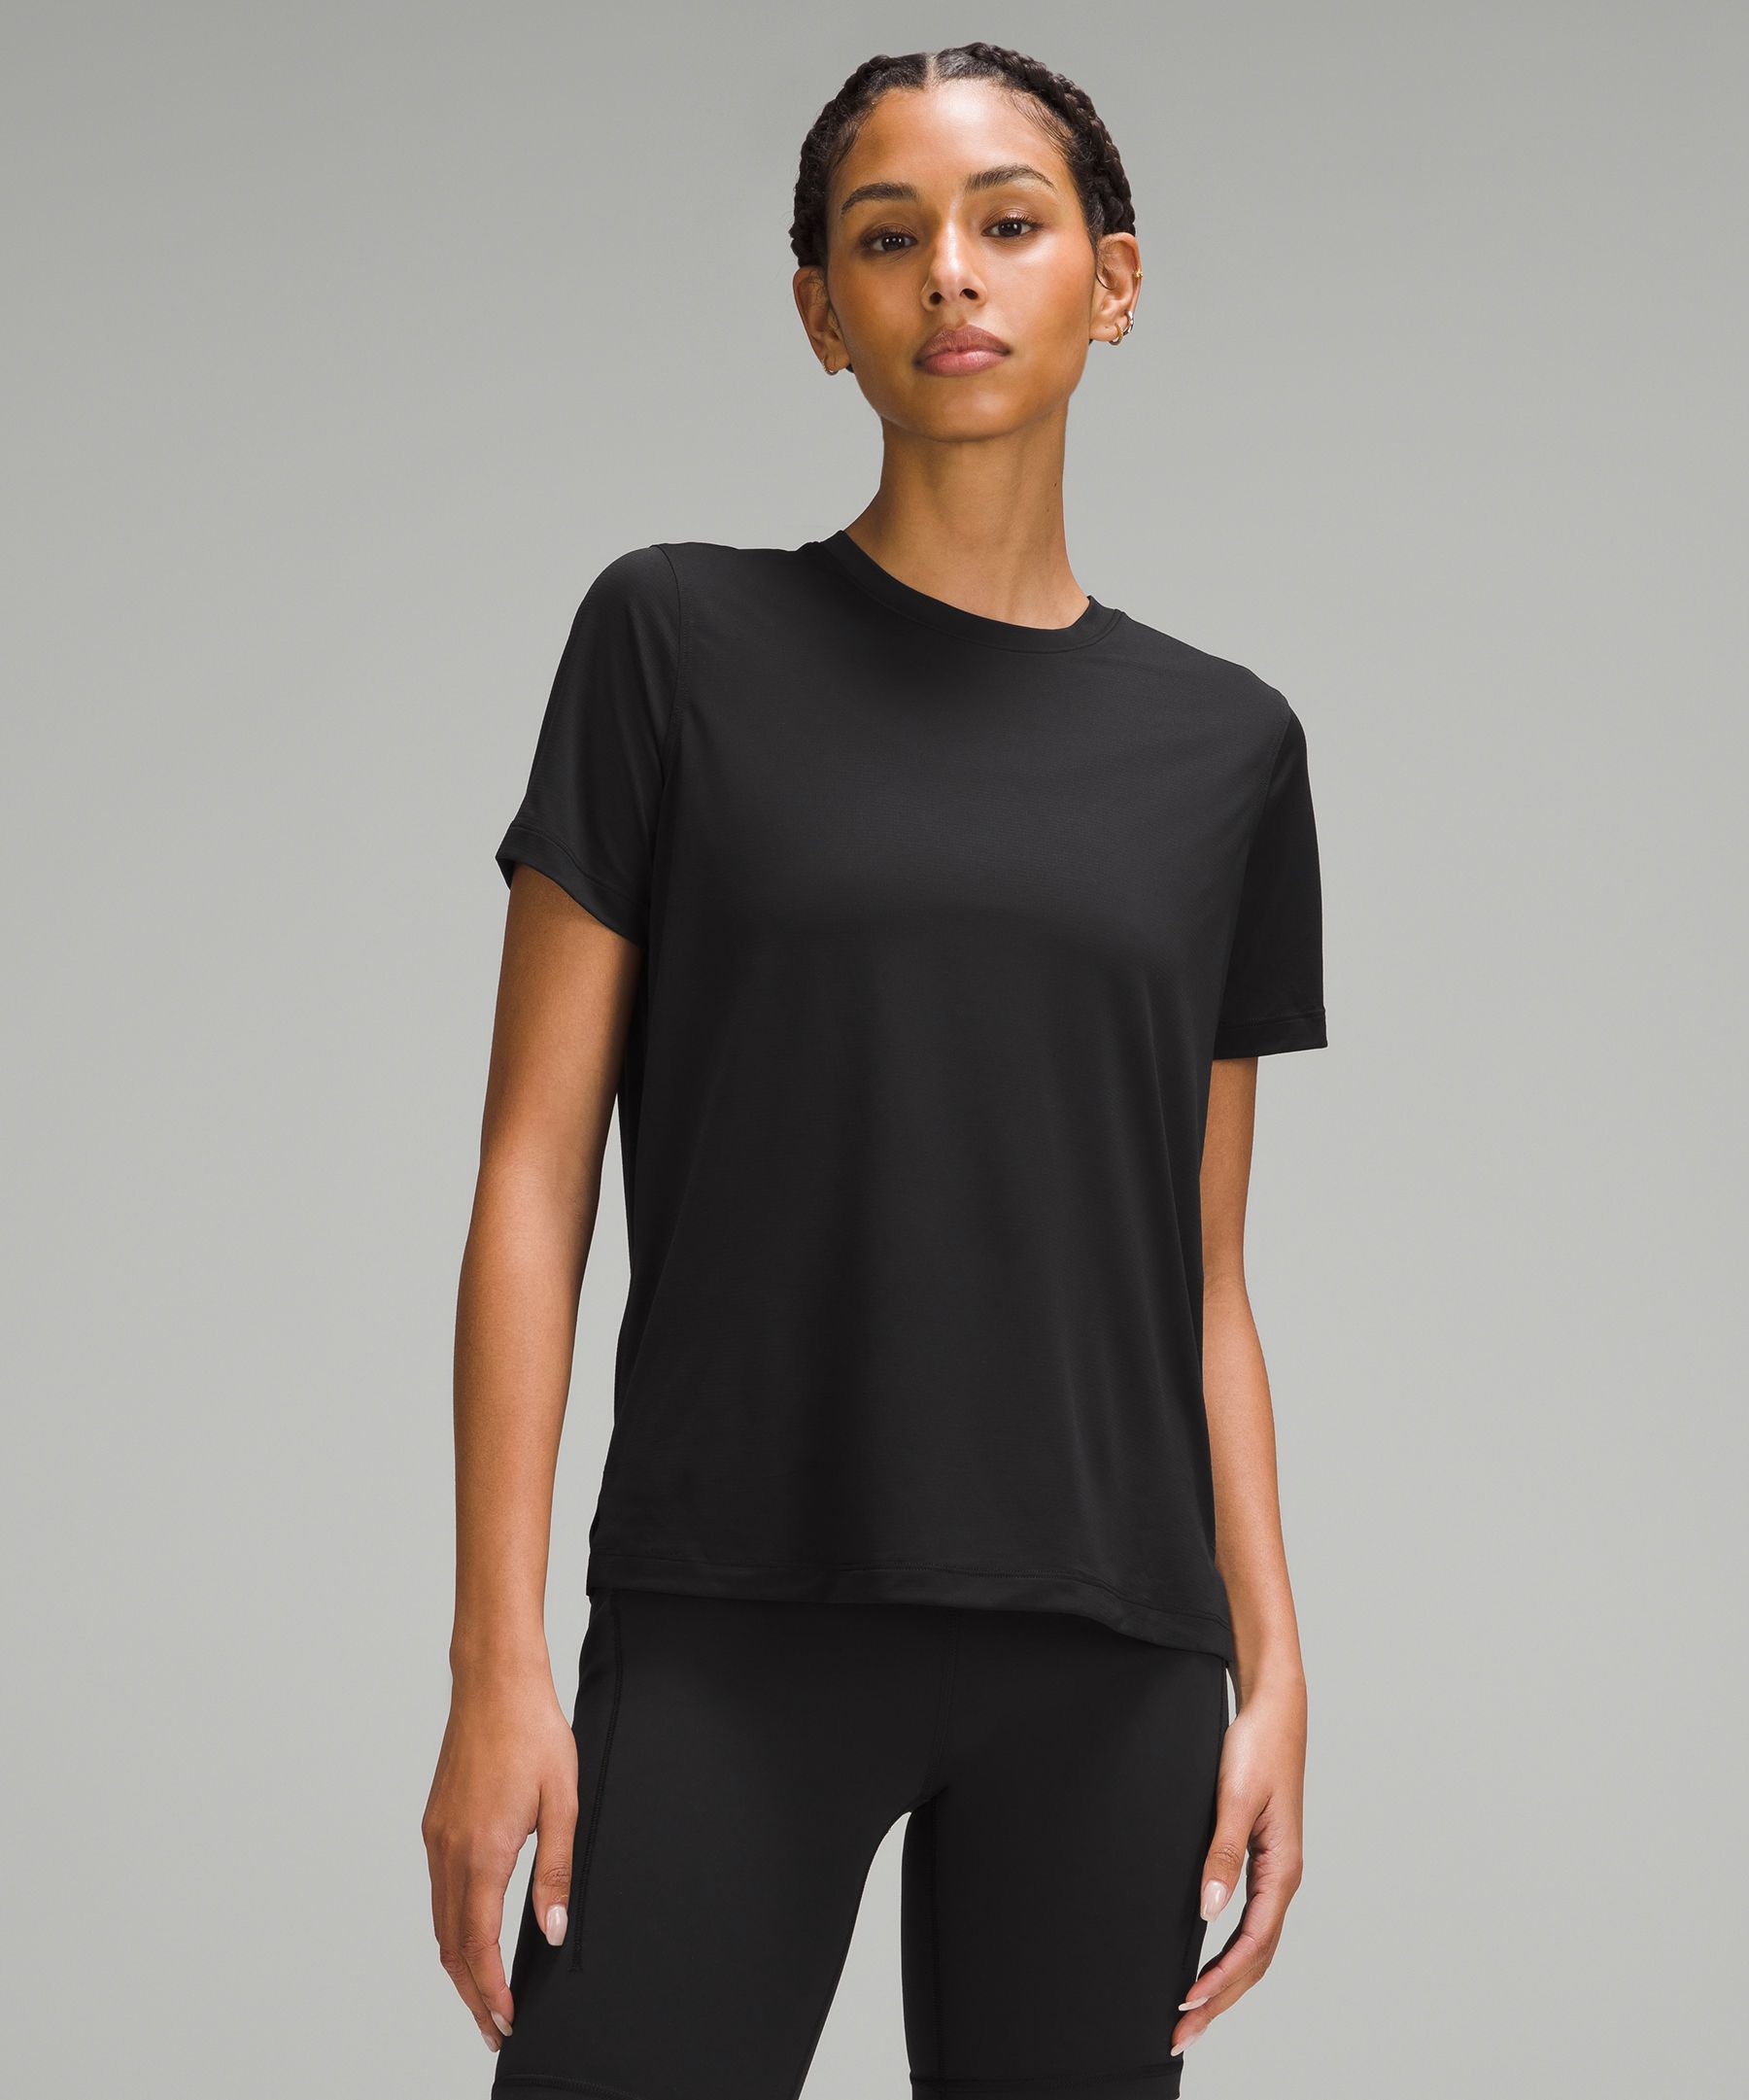 Ultralight Hip-Length T-Shirt | Women's Short Sleeve Shirts & Tee's